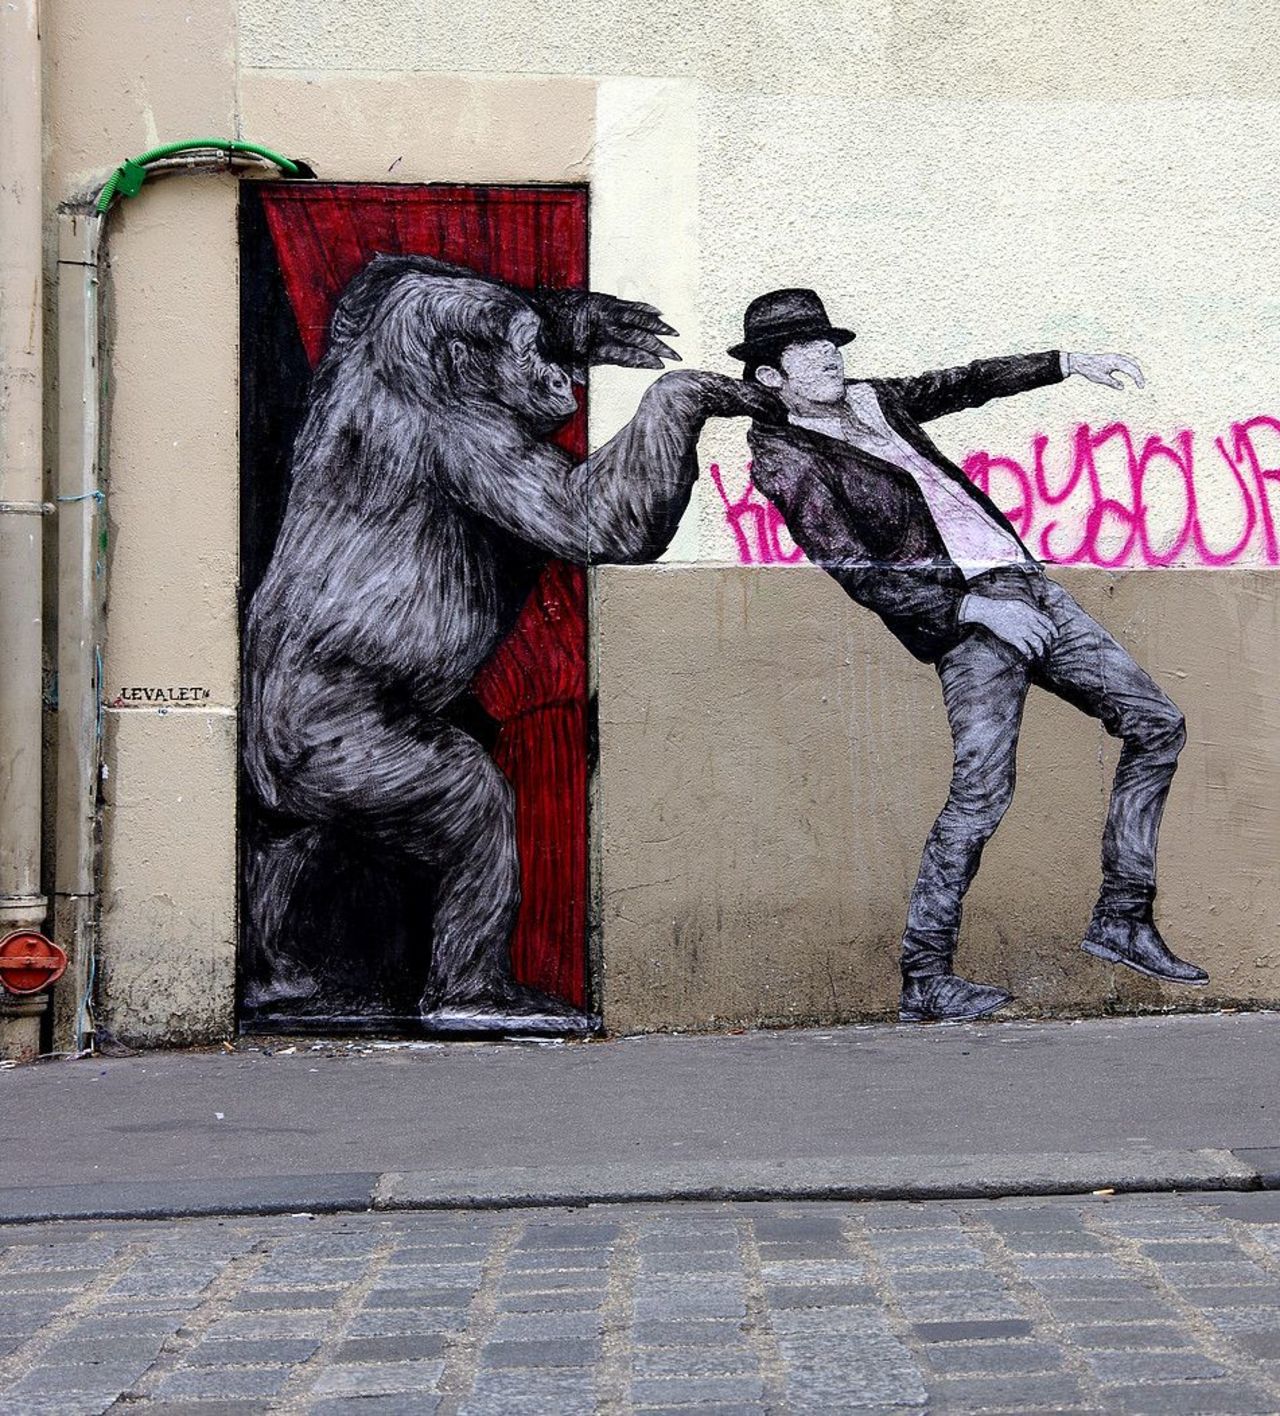 New Street Art by Levalet - Paris#streetart #mural #graffiti https://t.co/YdzhZaCelt